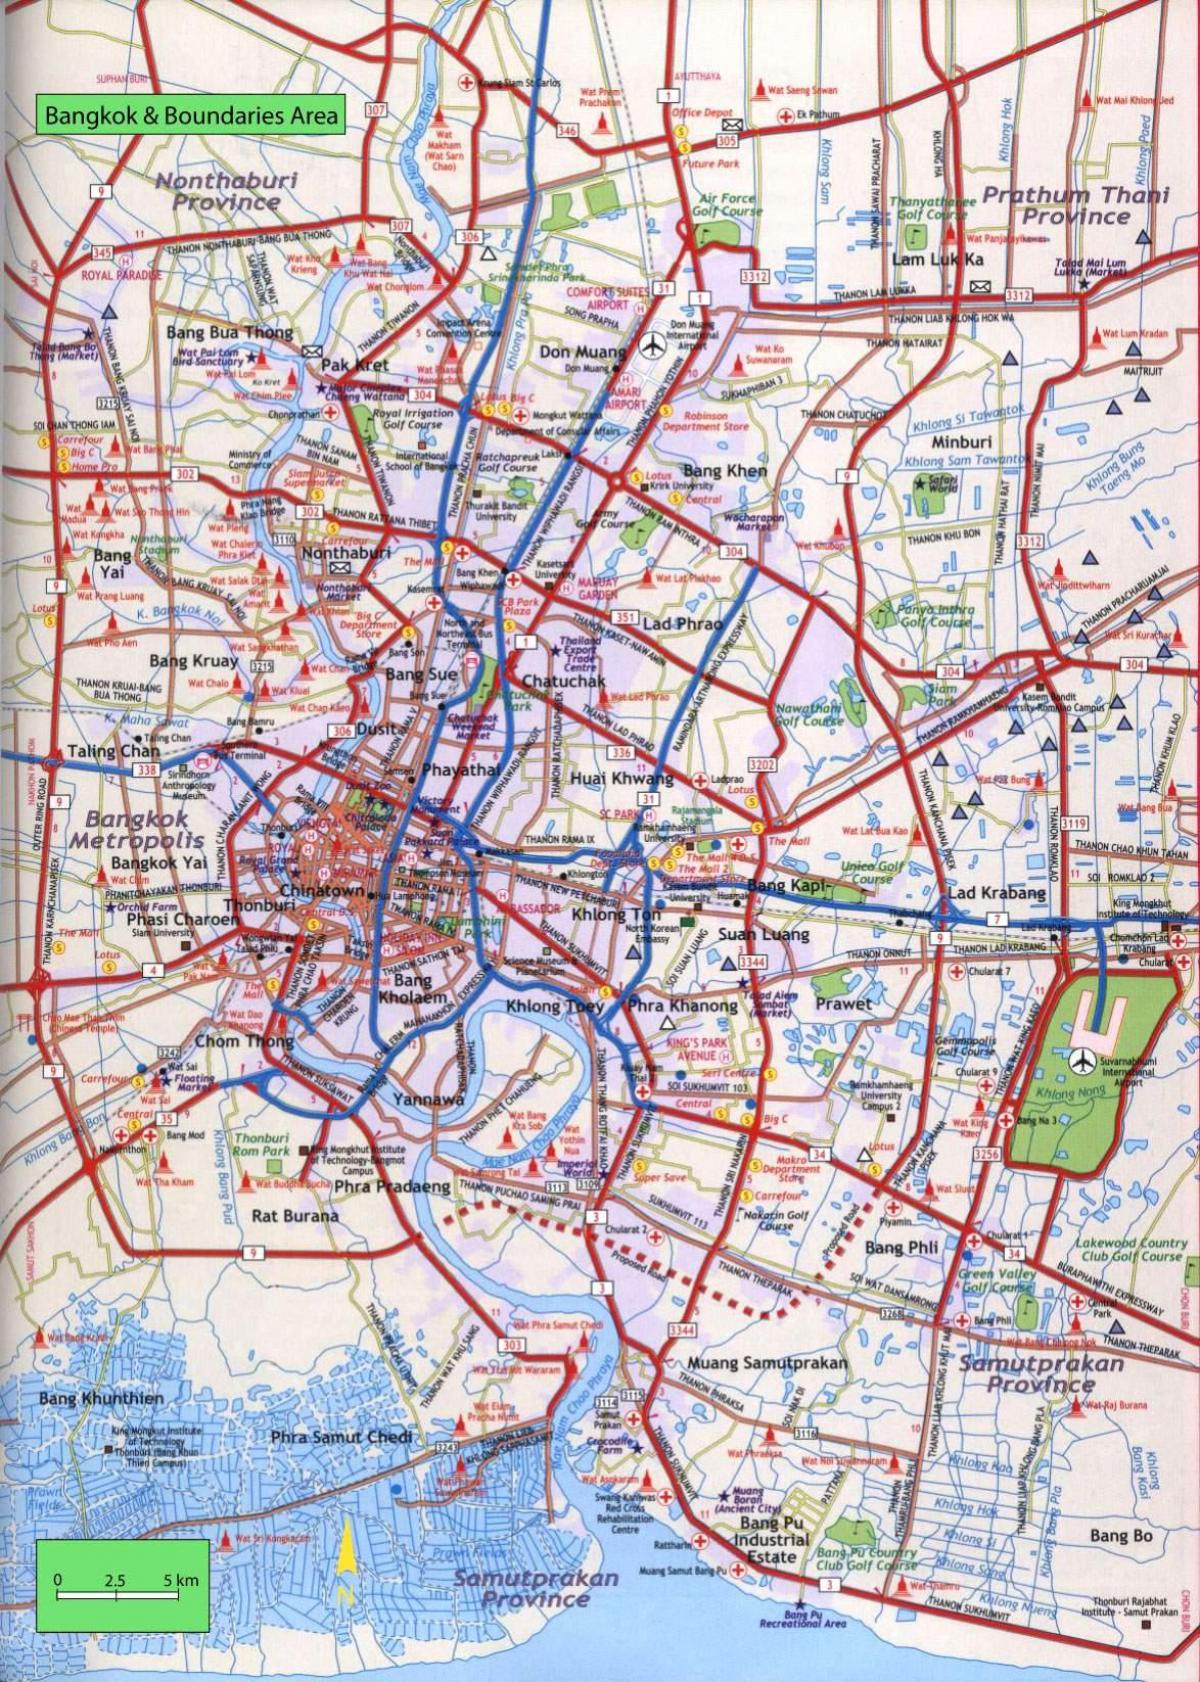 Plan des routes de Bangkok (Krung Thep)